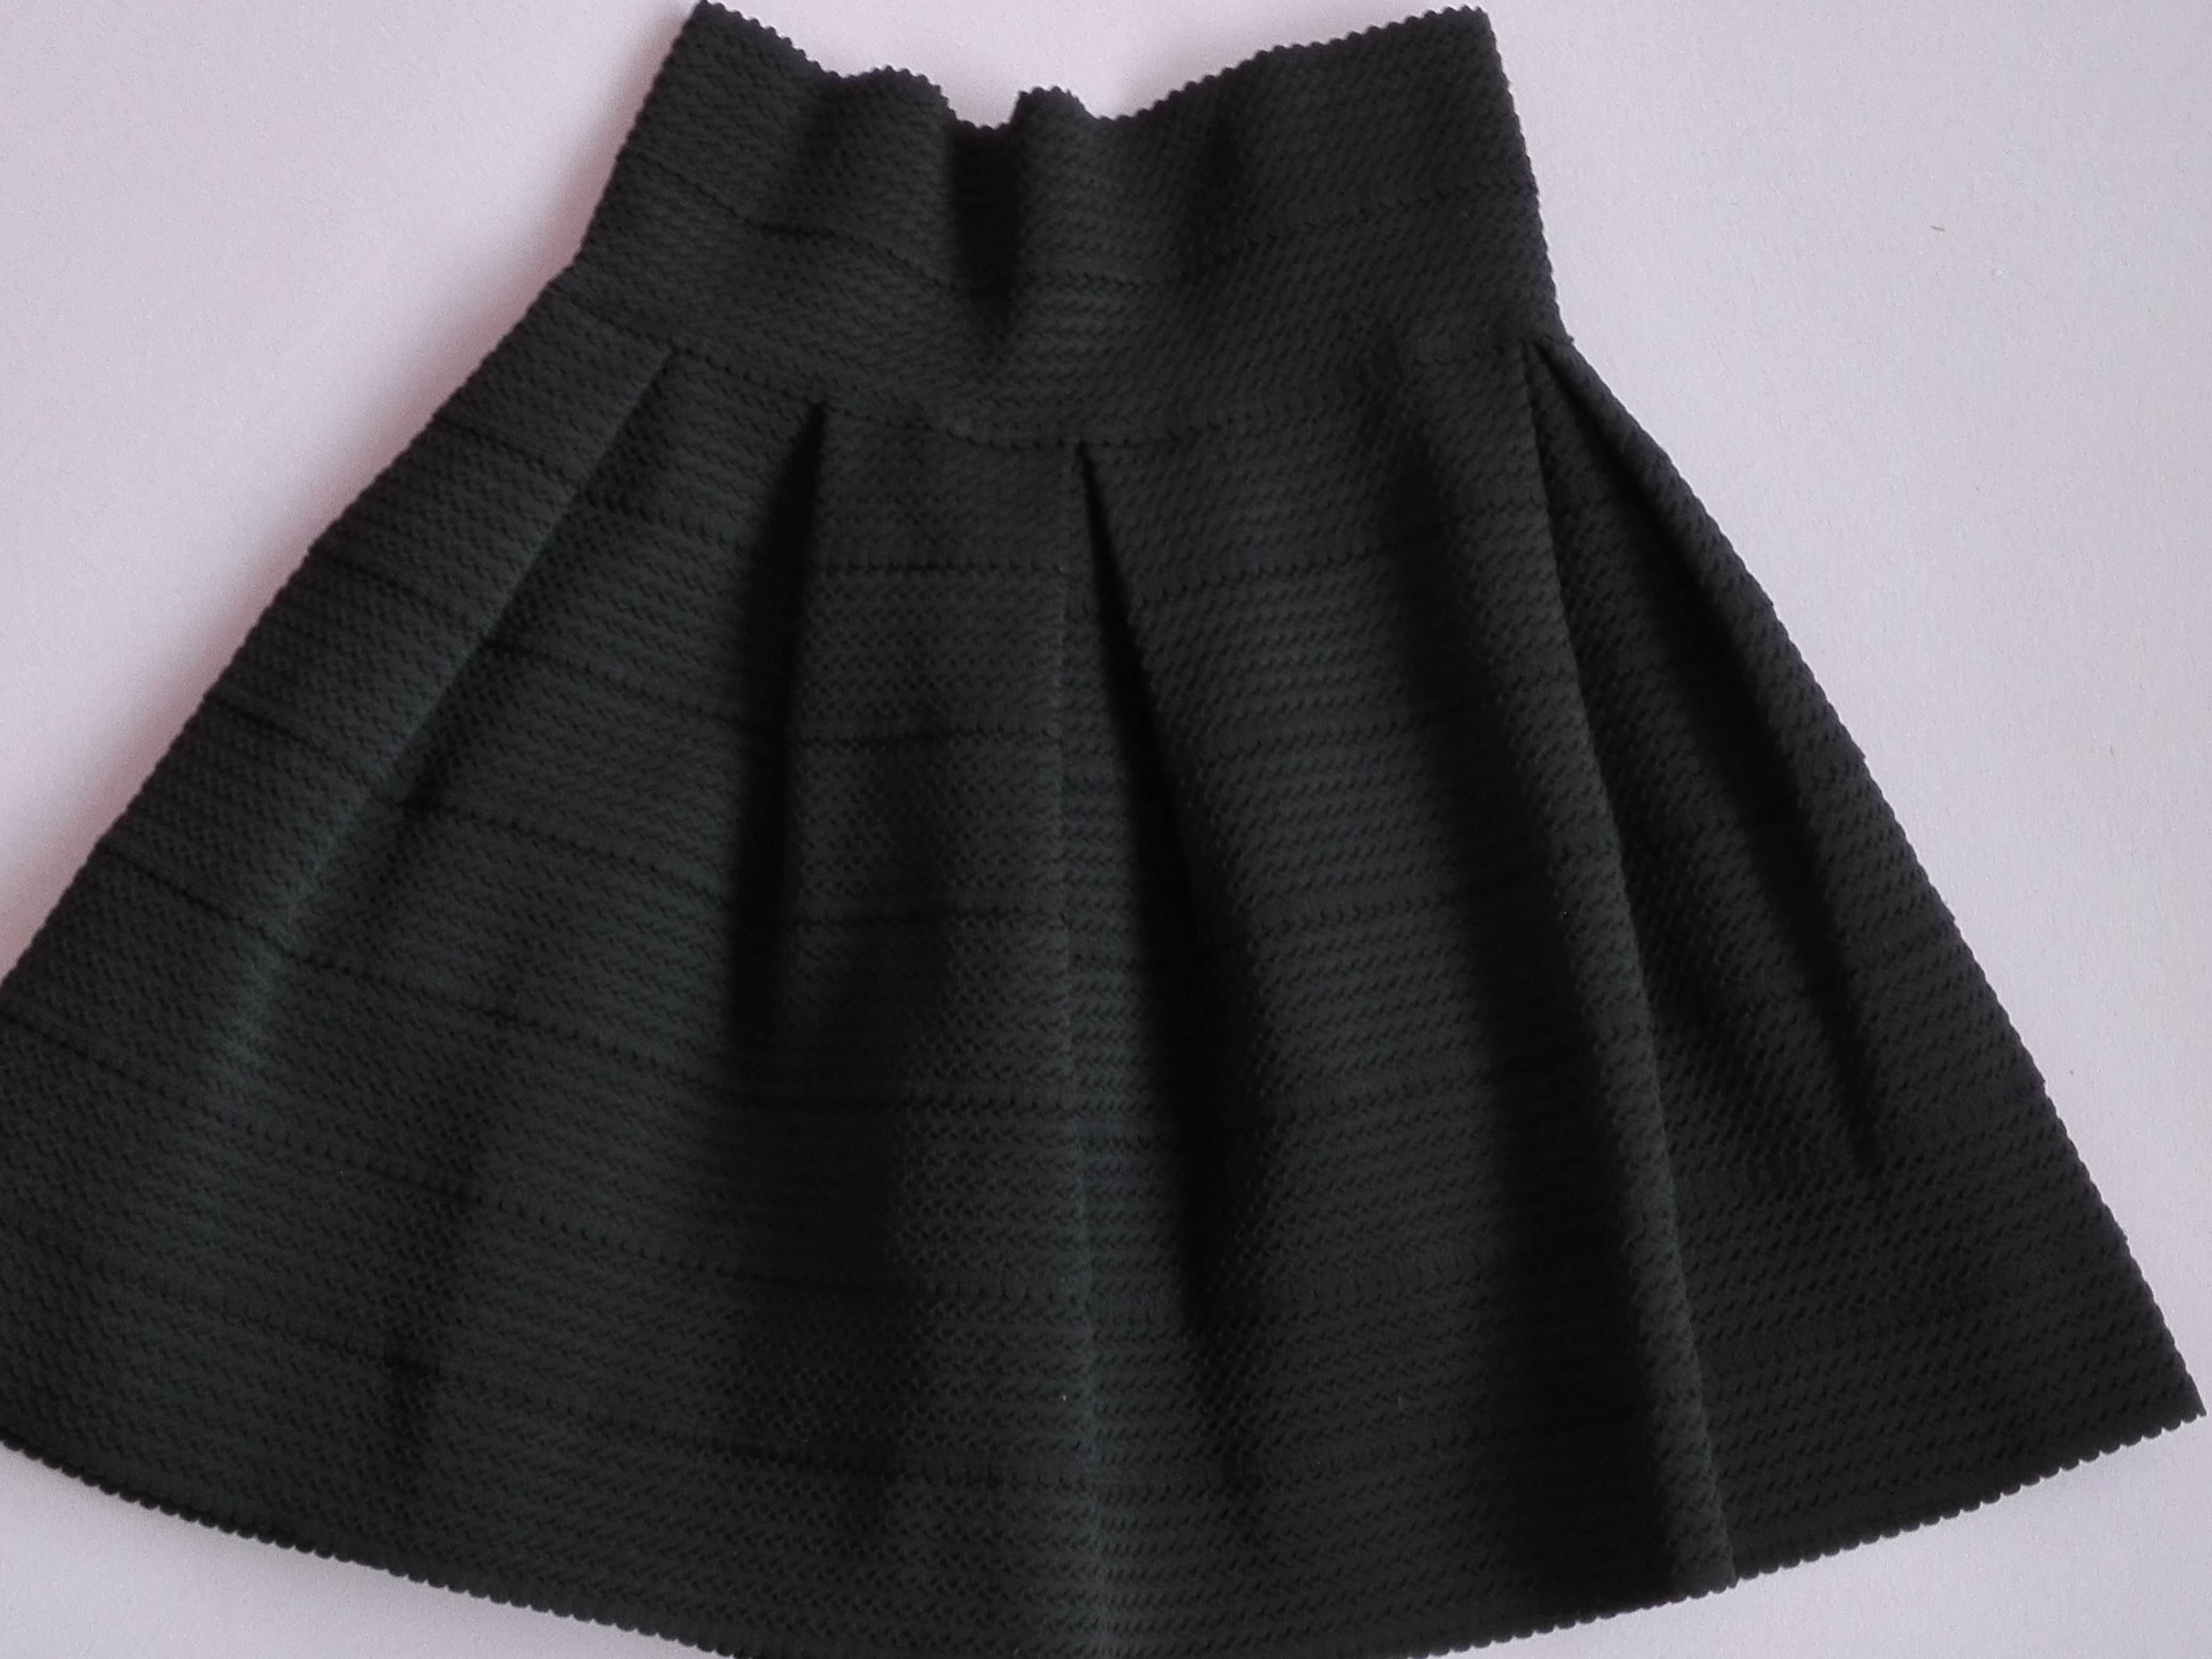 czarna spódnica spódniczka S, H&M, zakończenie roku szkolnego